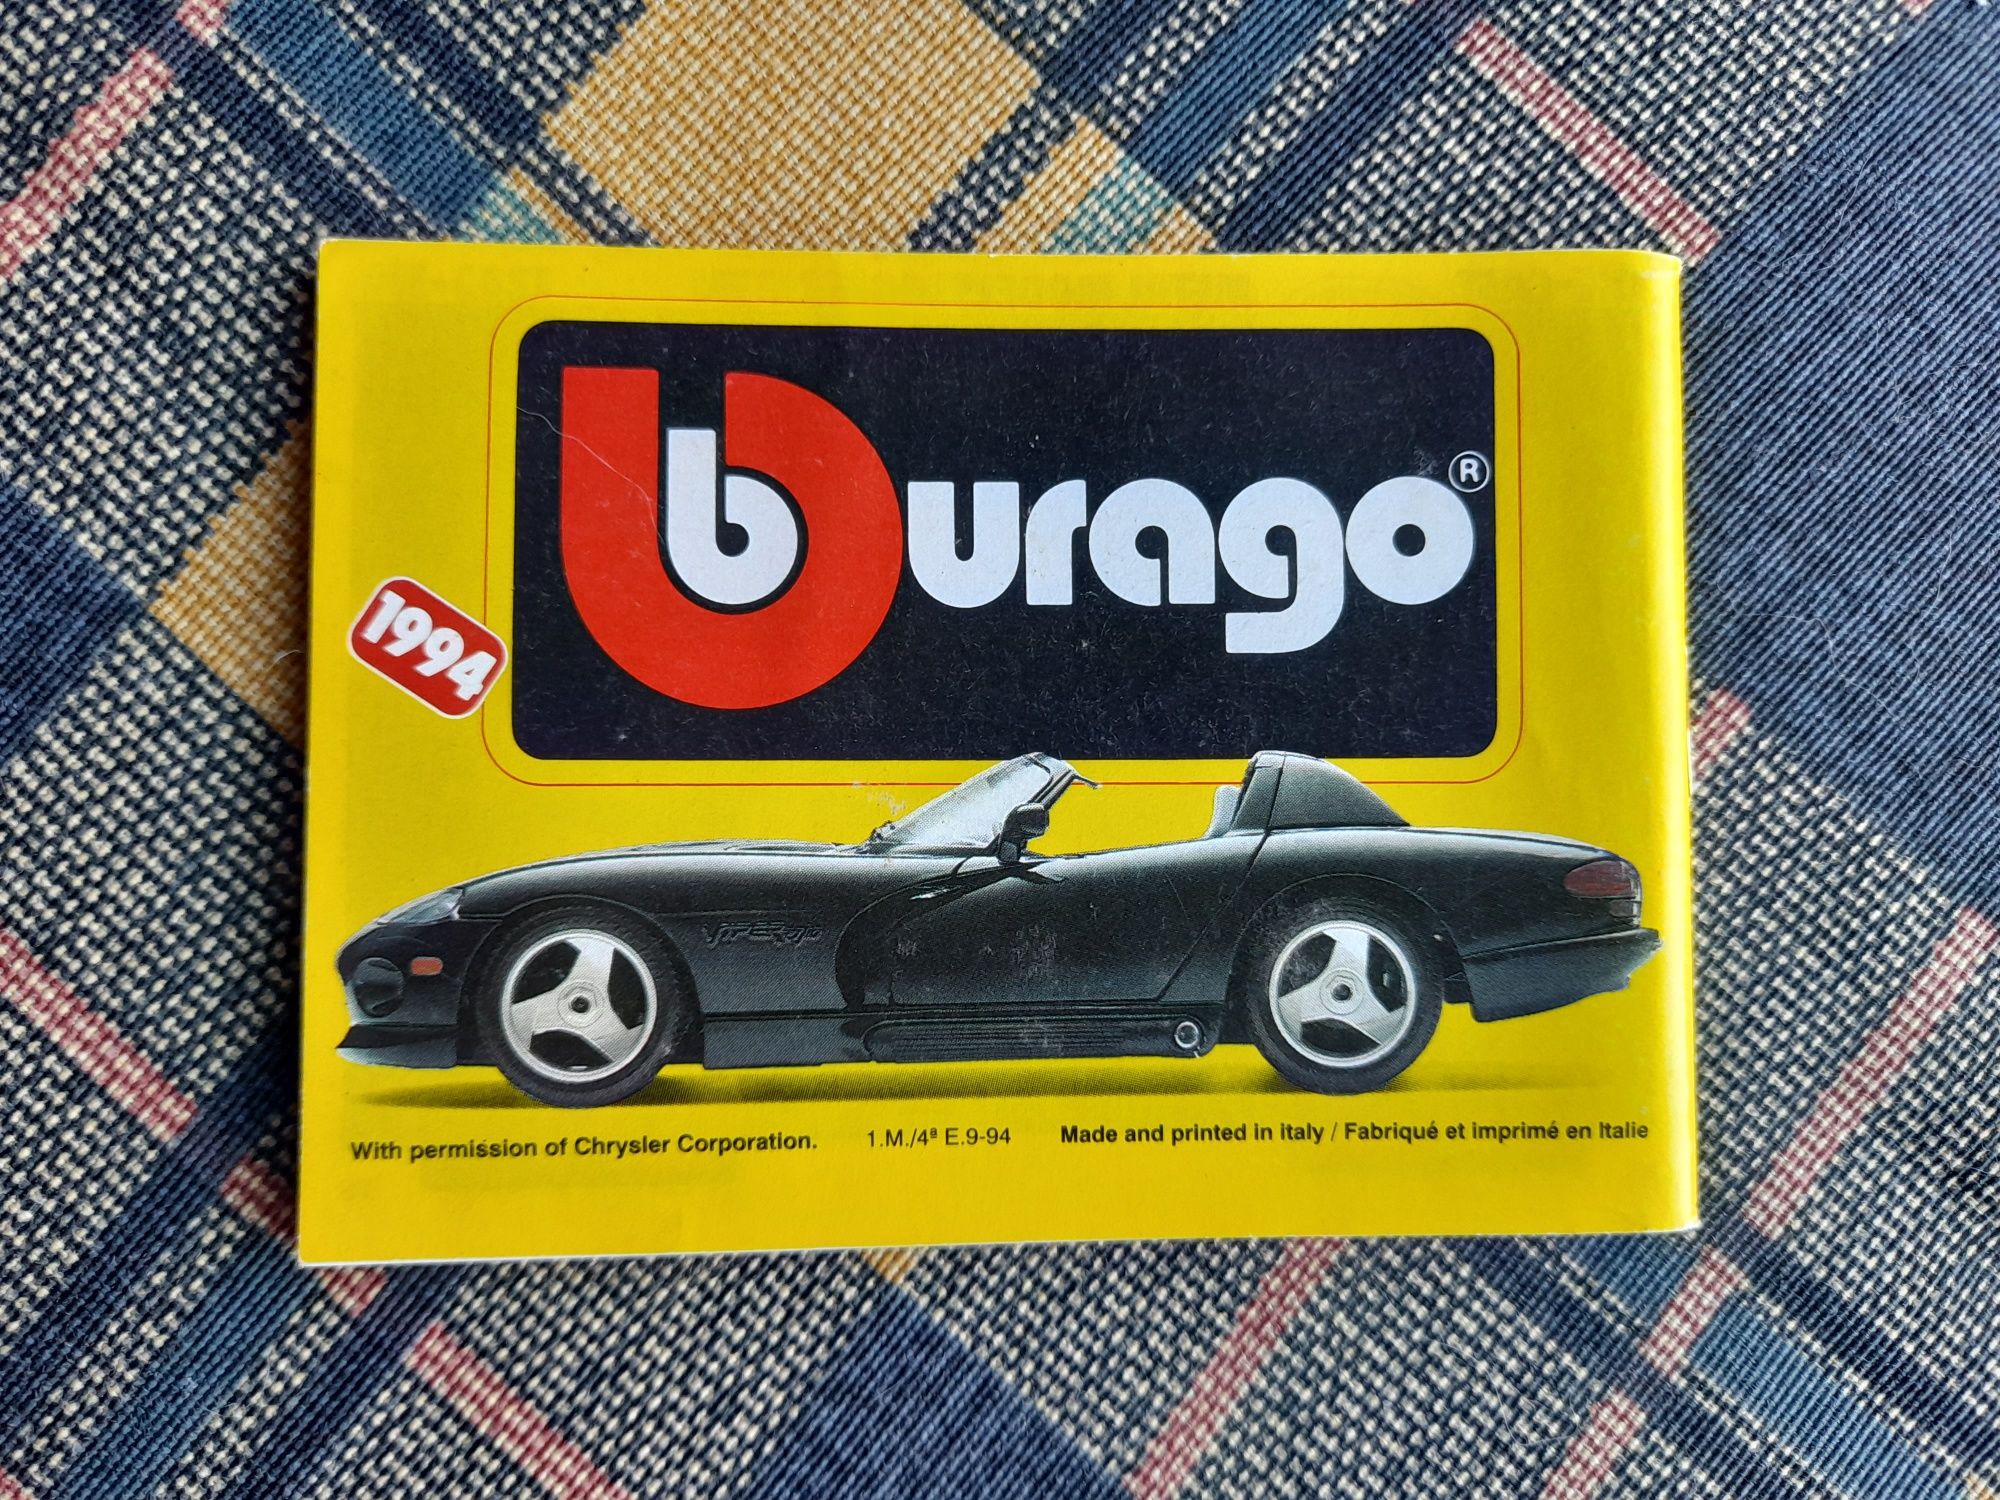 Catalogo Burago 1994